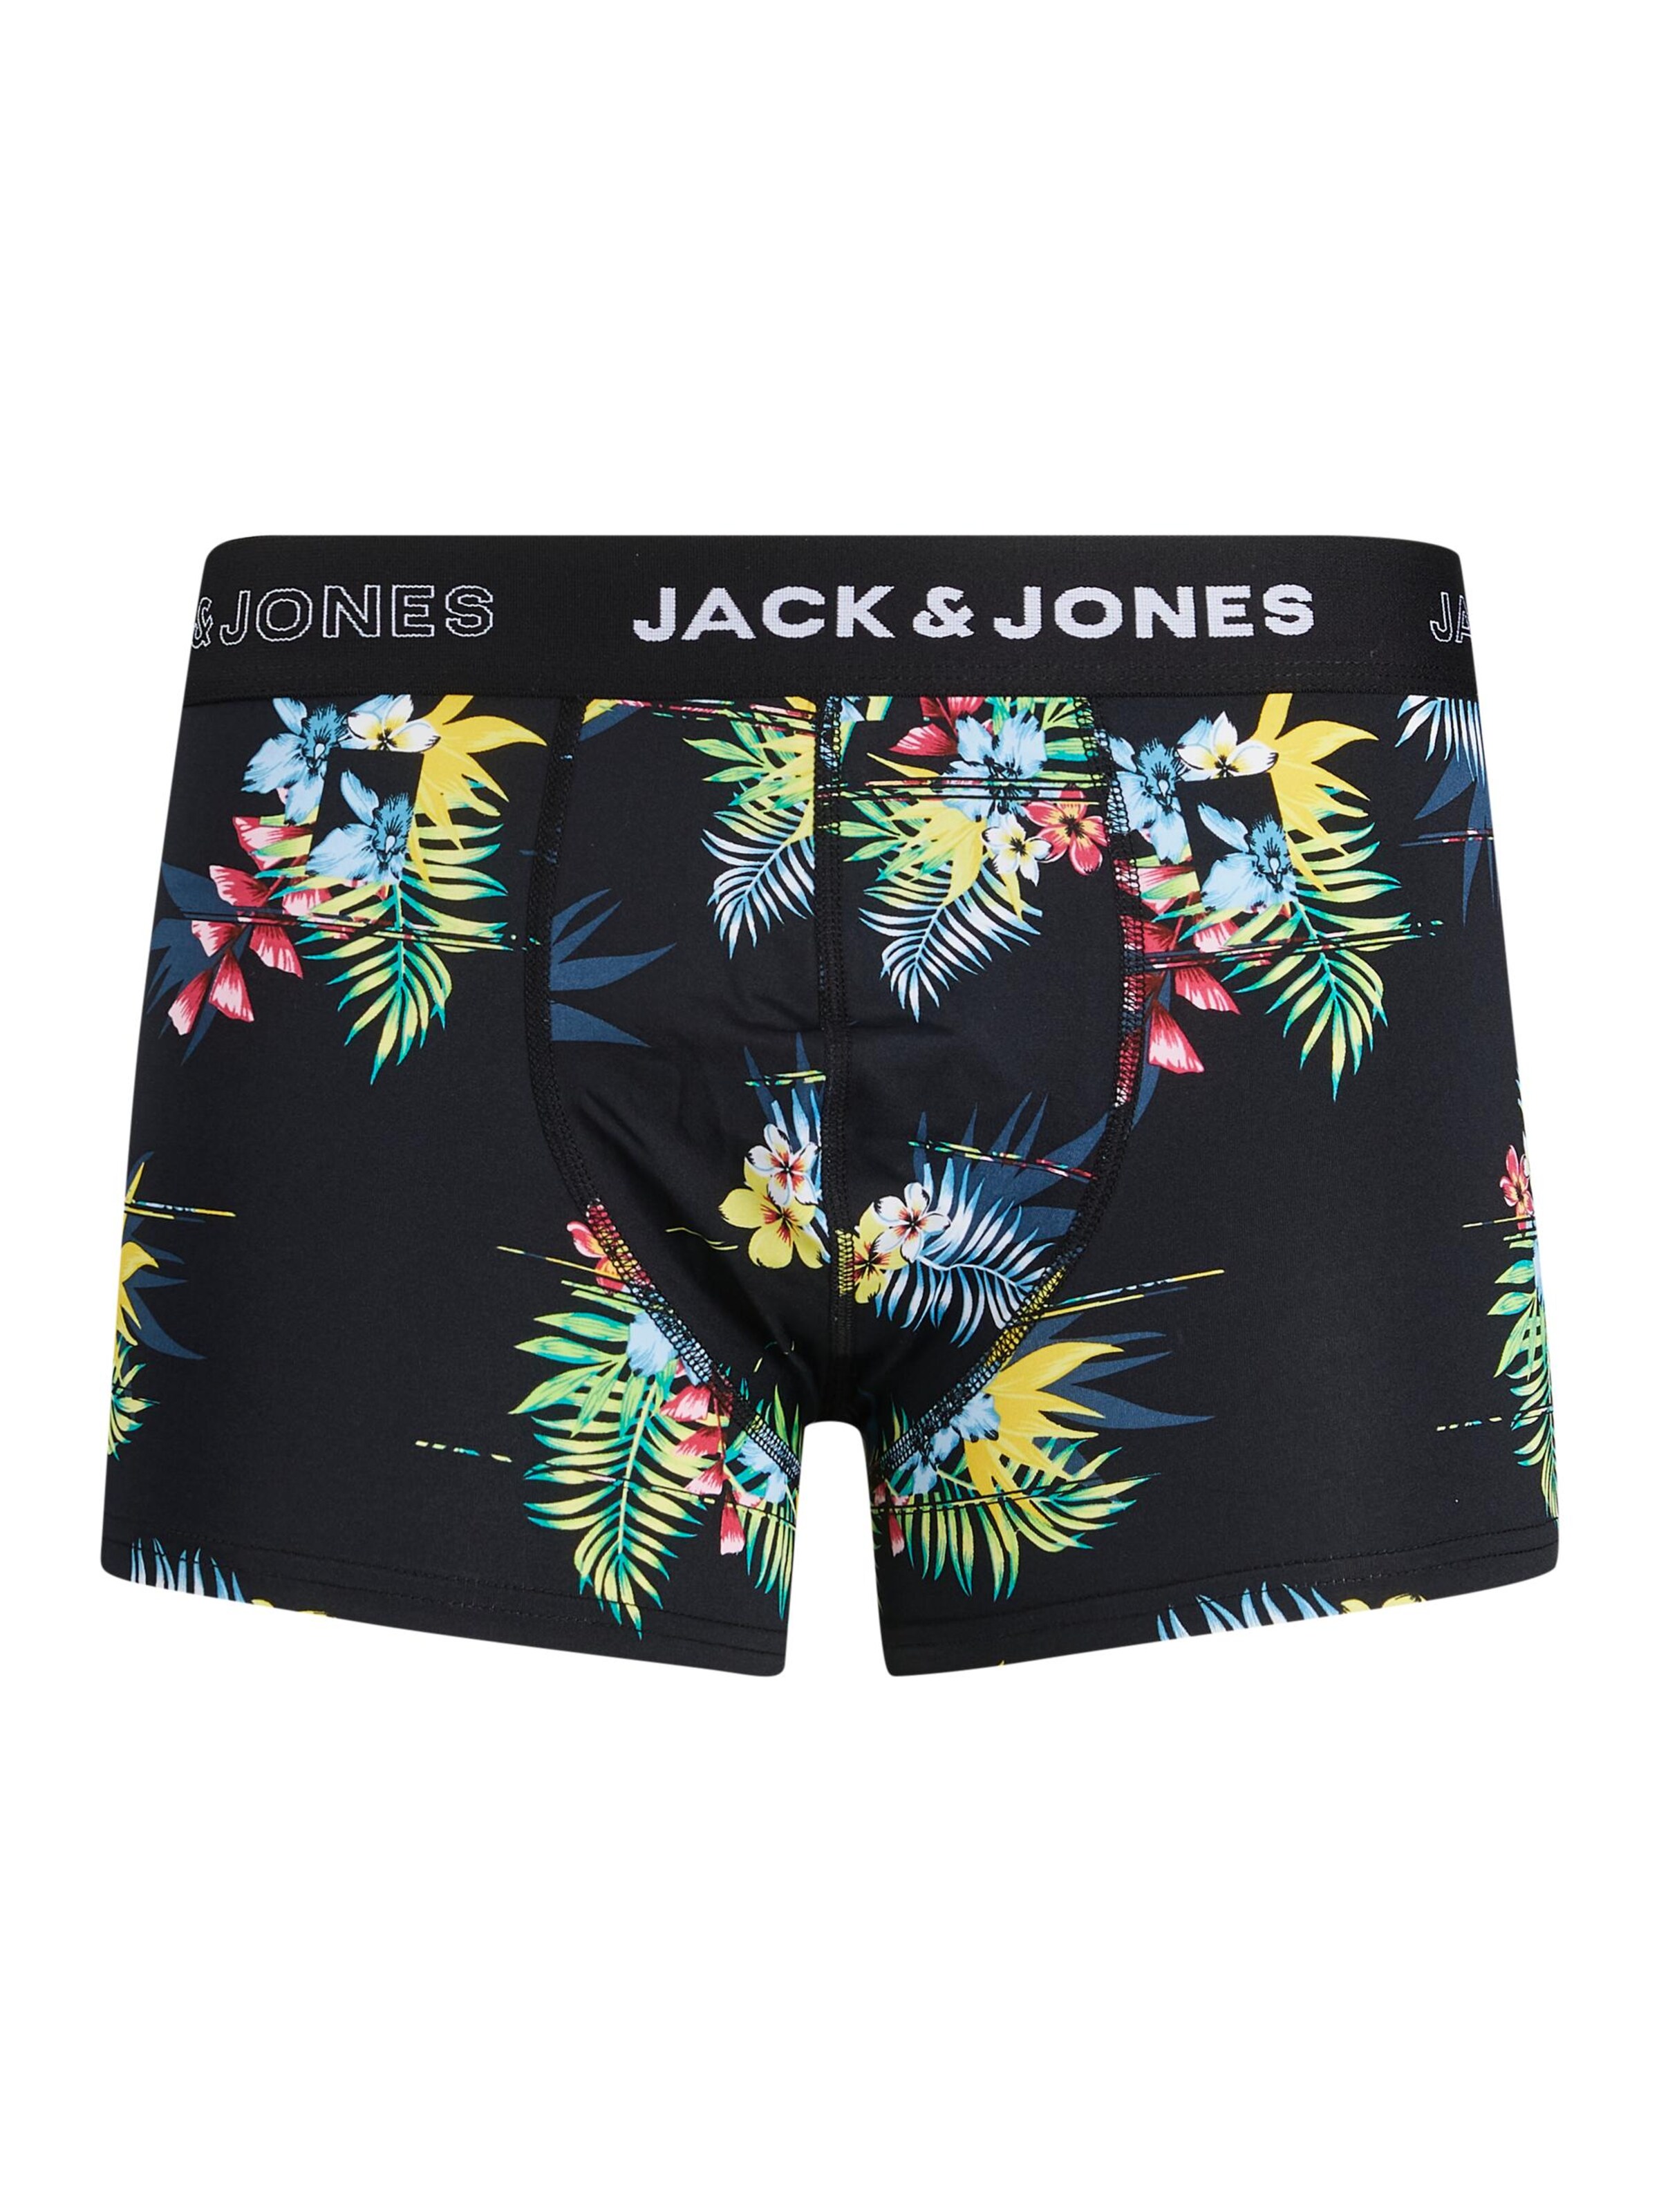 Sous-vêtements Boxers STAYCAY JACK & JONES en Noir, Bleu 